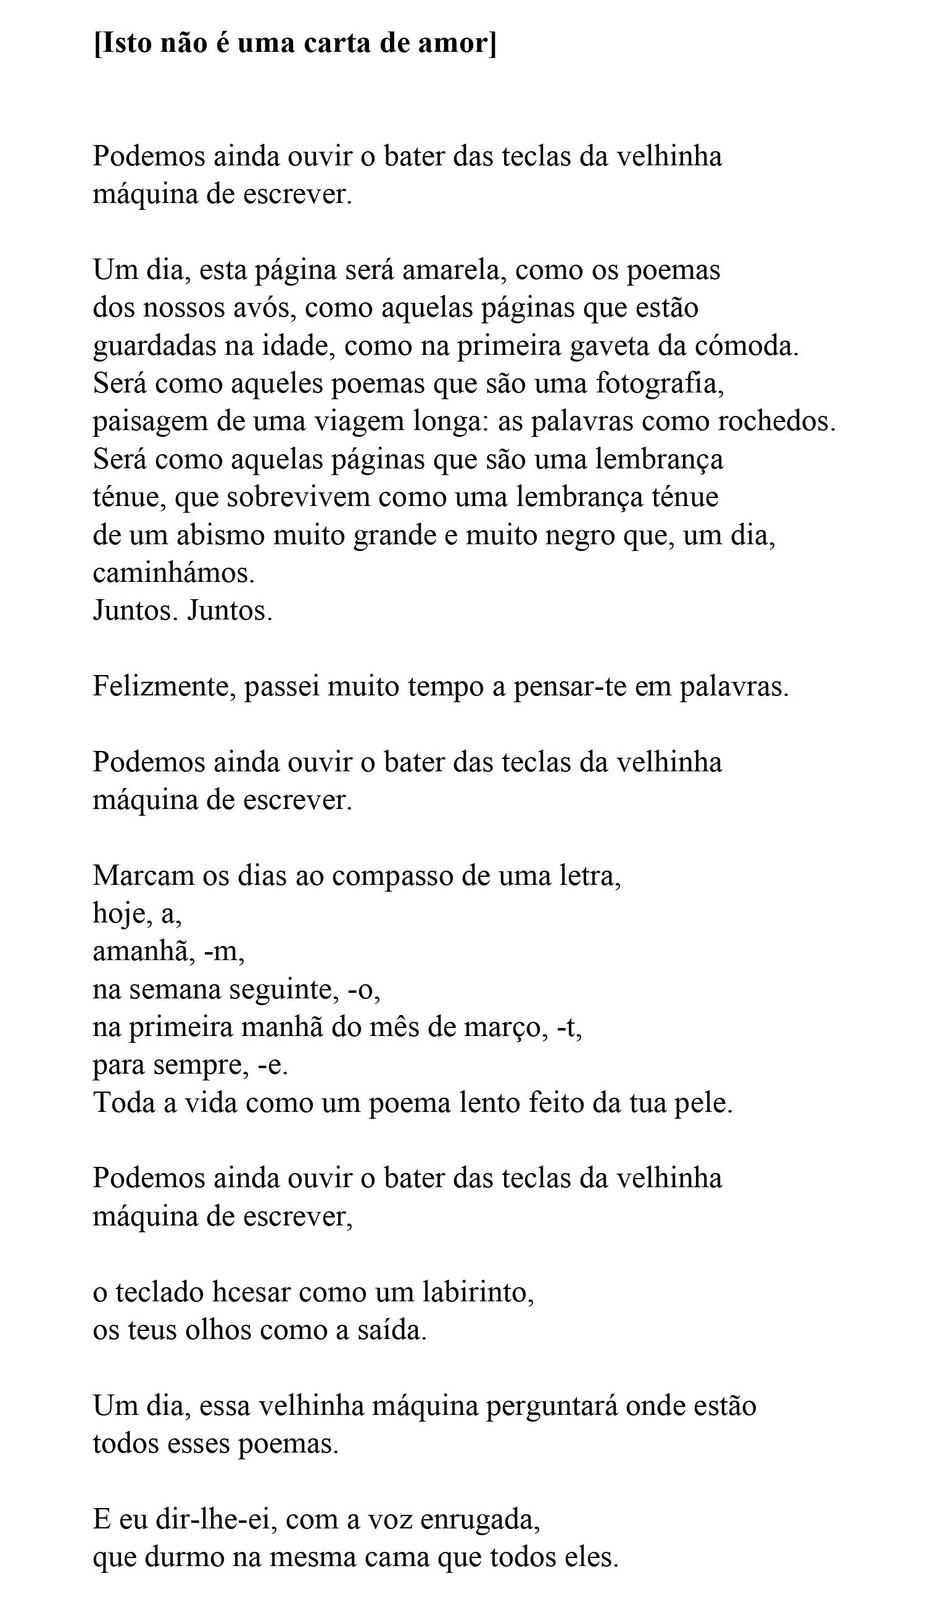 poema1